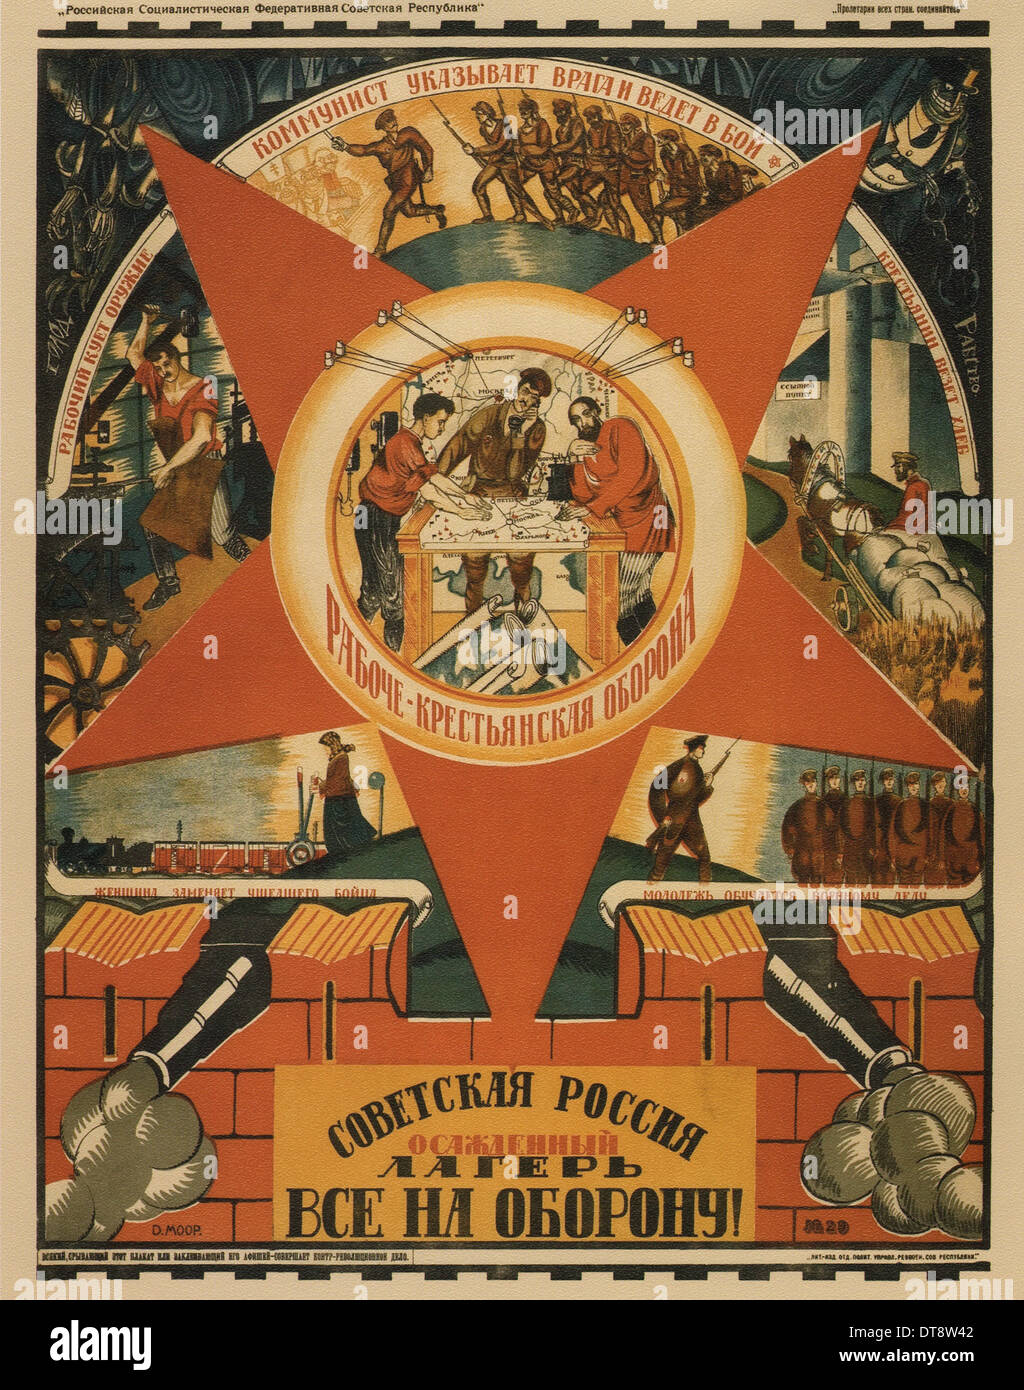 La Russia sovietica è sotto assedio. Tutti a difesa! (Poster), 1919. Artista: Moor, Dmitri Stachievich (1883-1946) Foto Stock